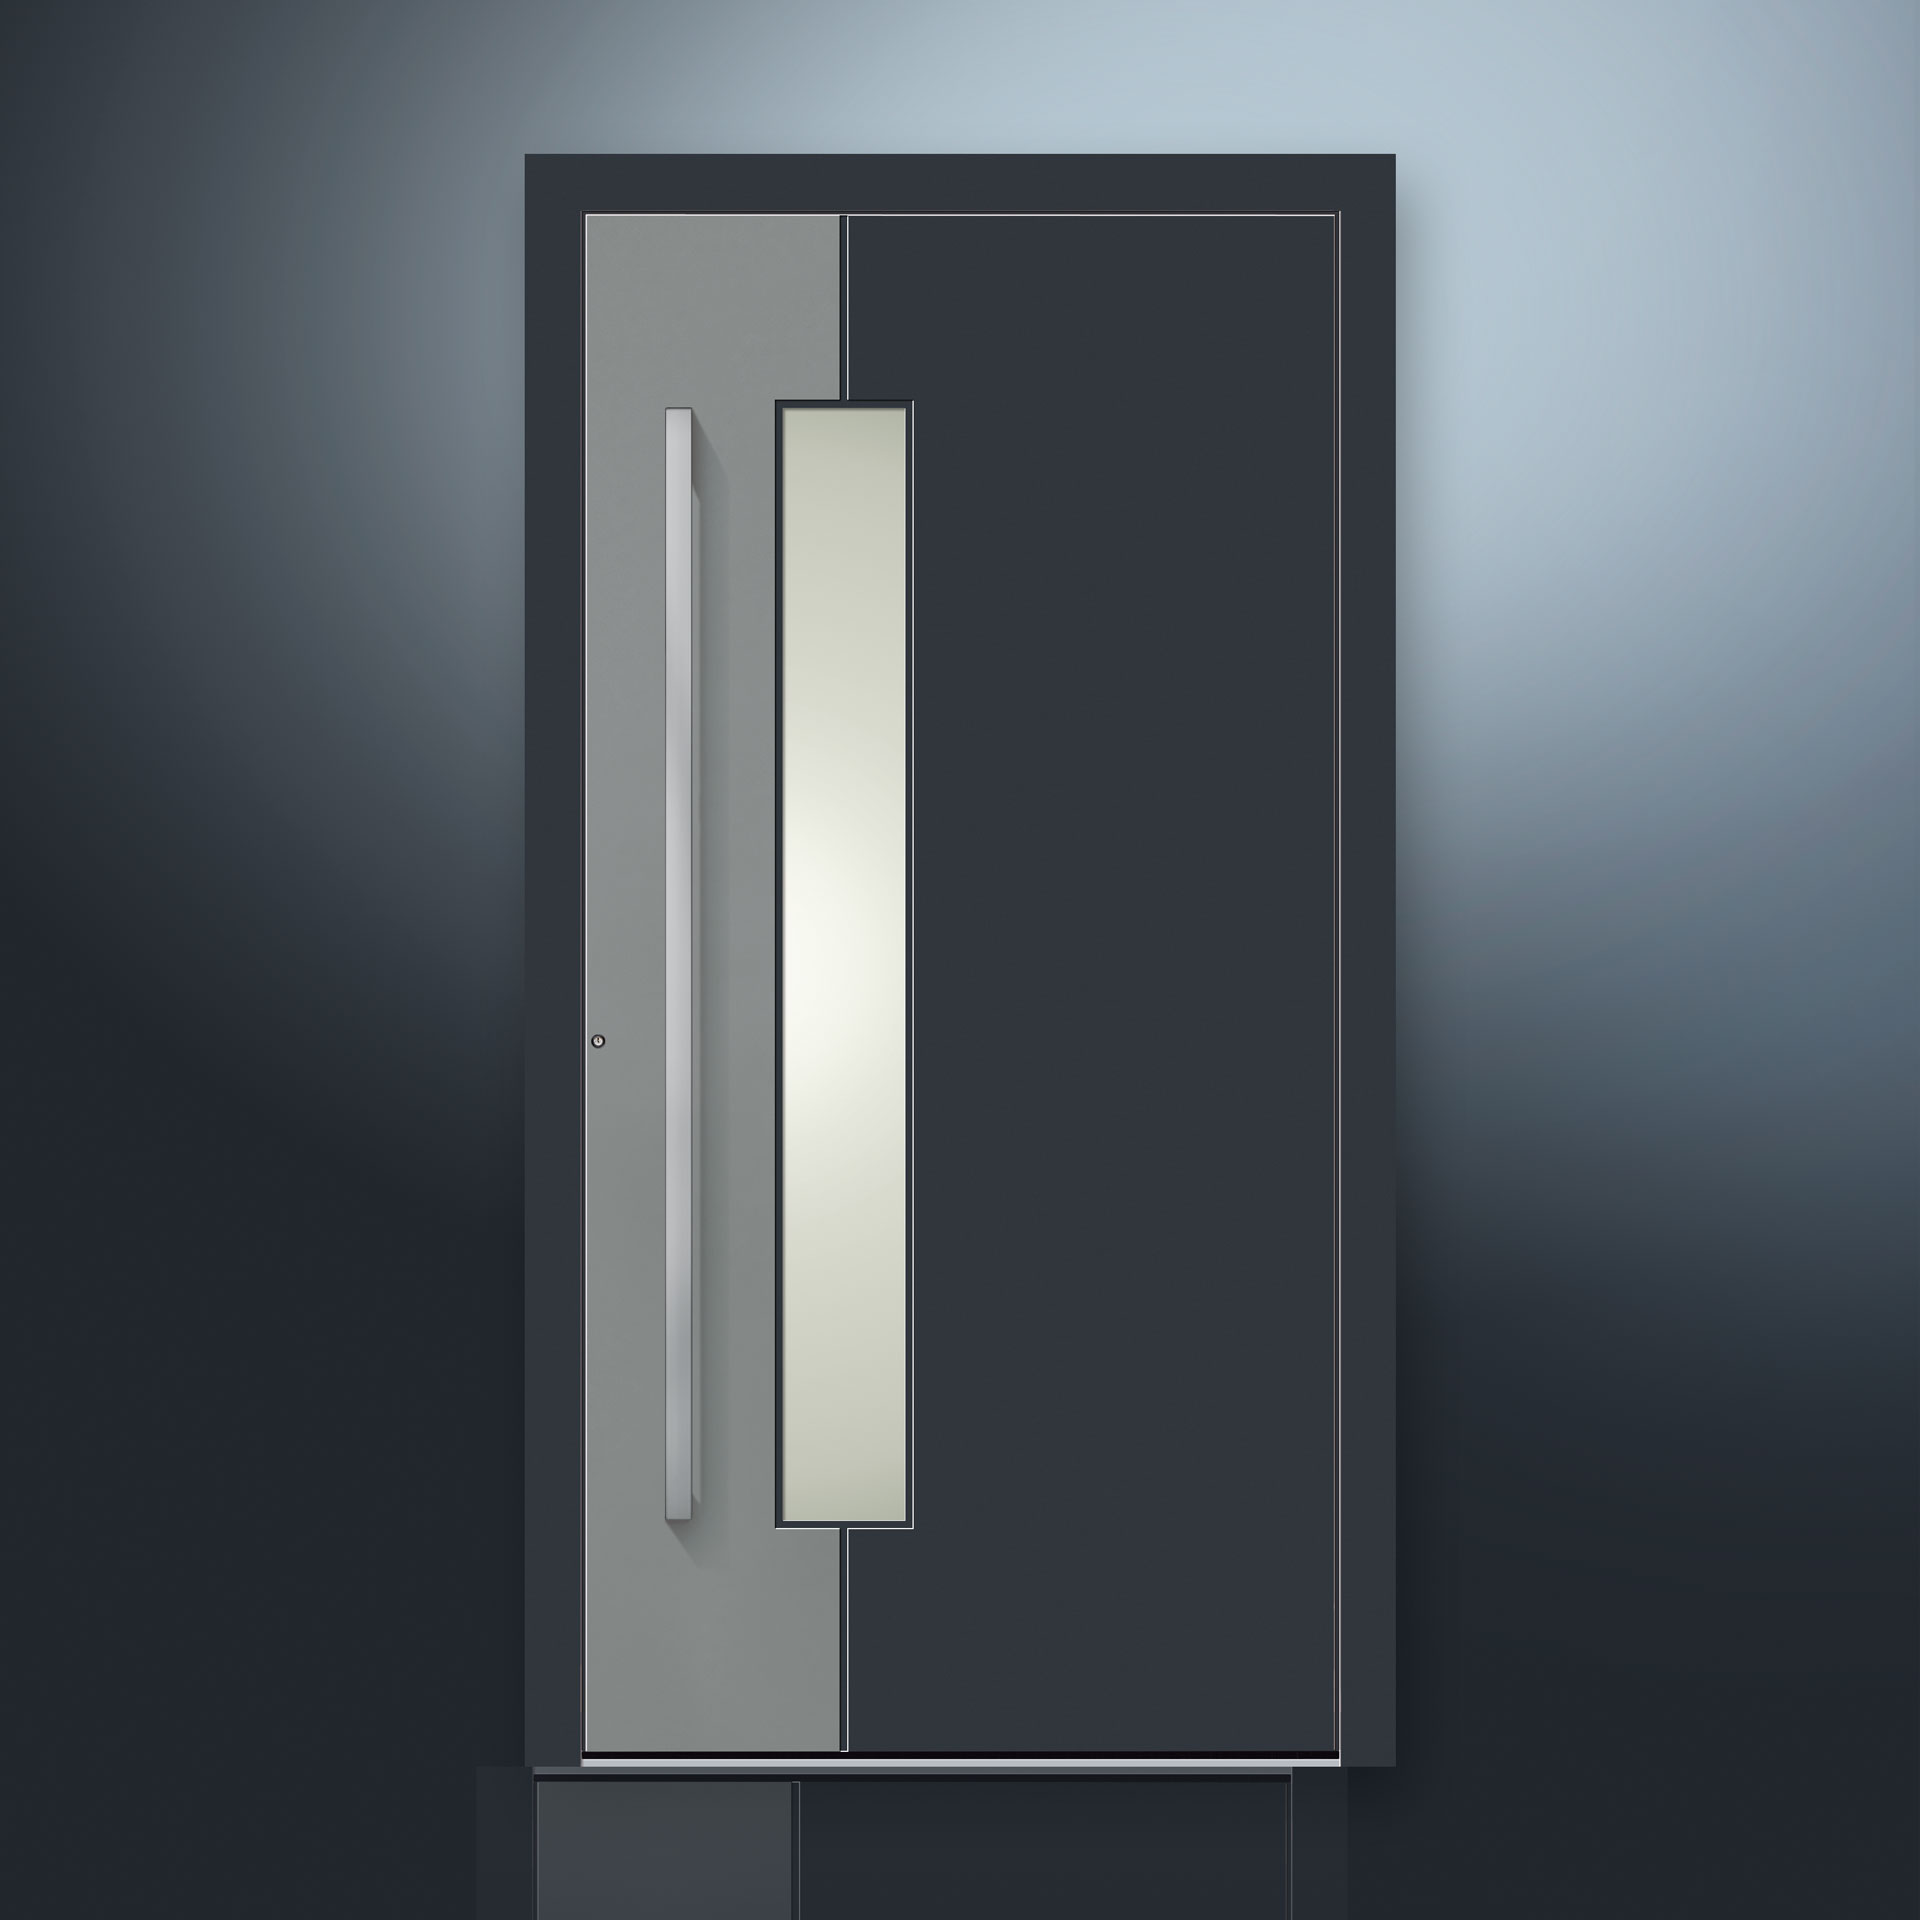 Drewniano-aluminiowy system drzwi wejściowych ALLIGNO firmy GUTMANN jest dostępny w dziewięciu standardowych modelach. (Aluminiowe skrzydło drzwi wejściowych jest odporne na warunki atmosferyczne, trwałe i łatwe w czyszczeniu.